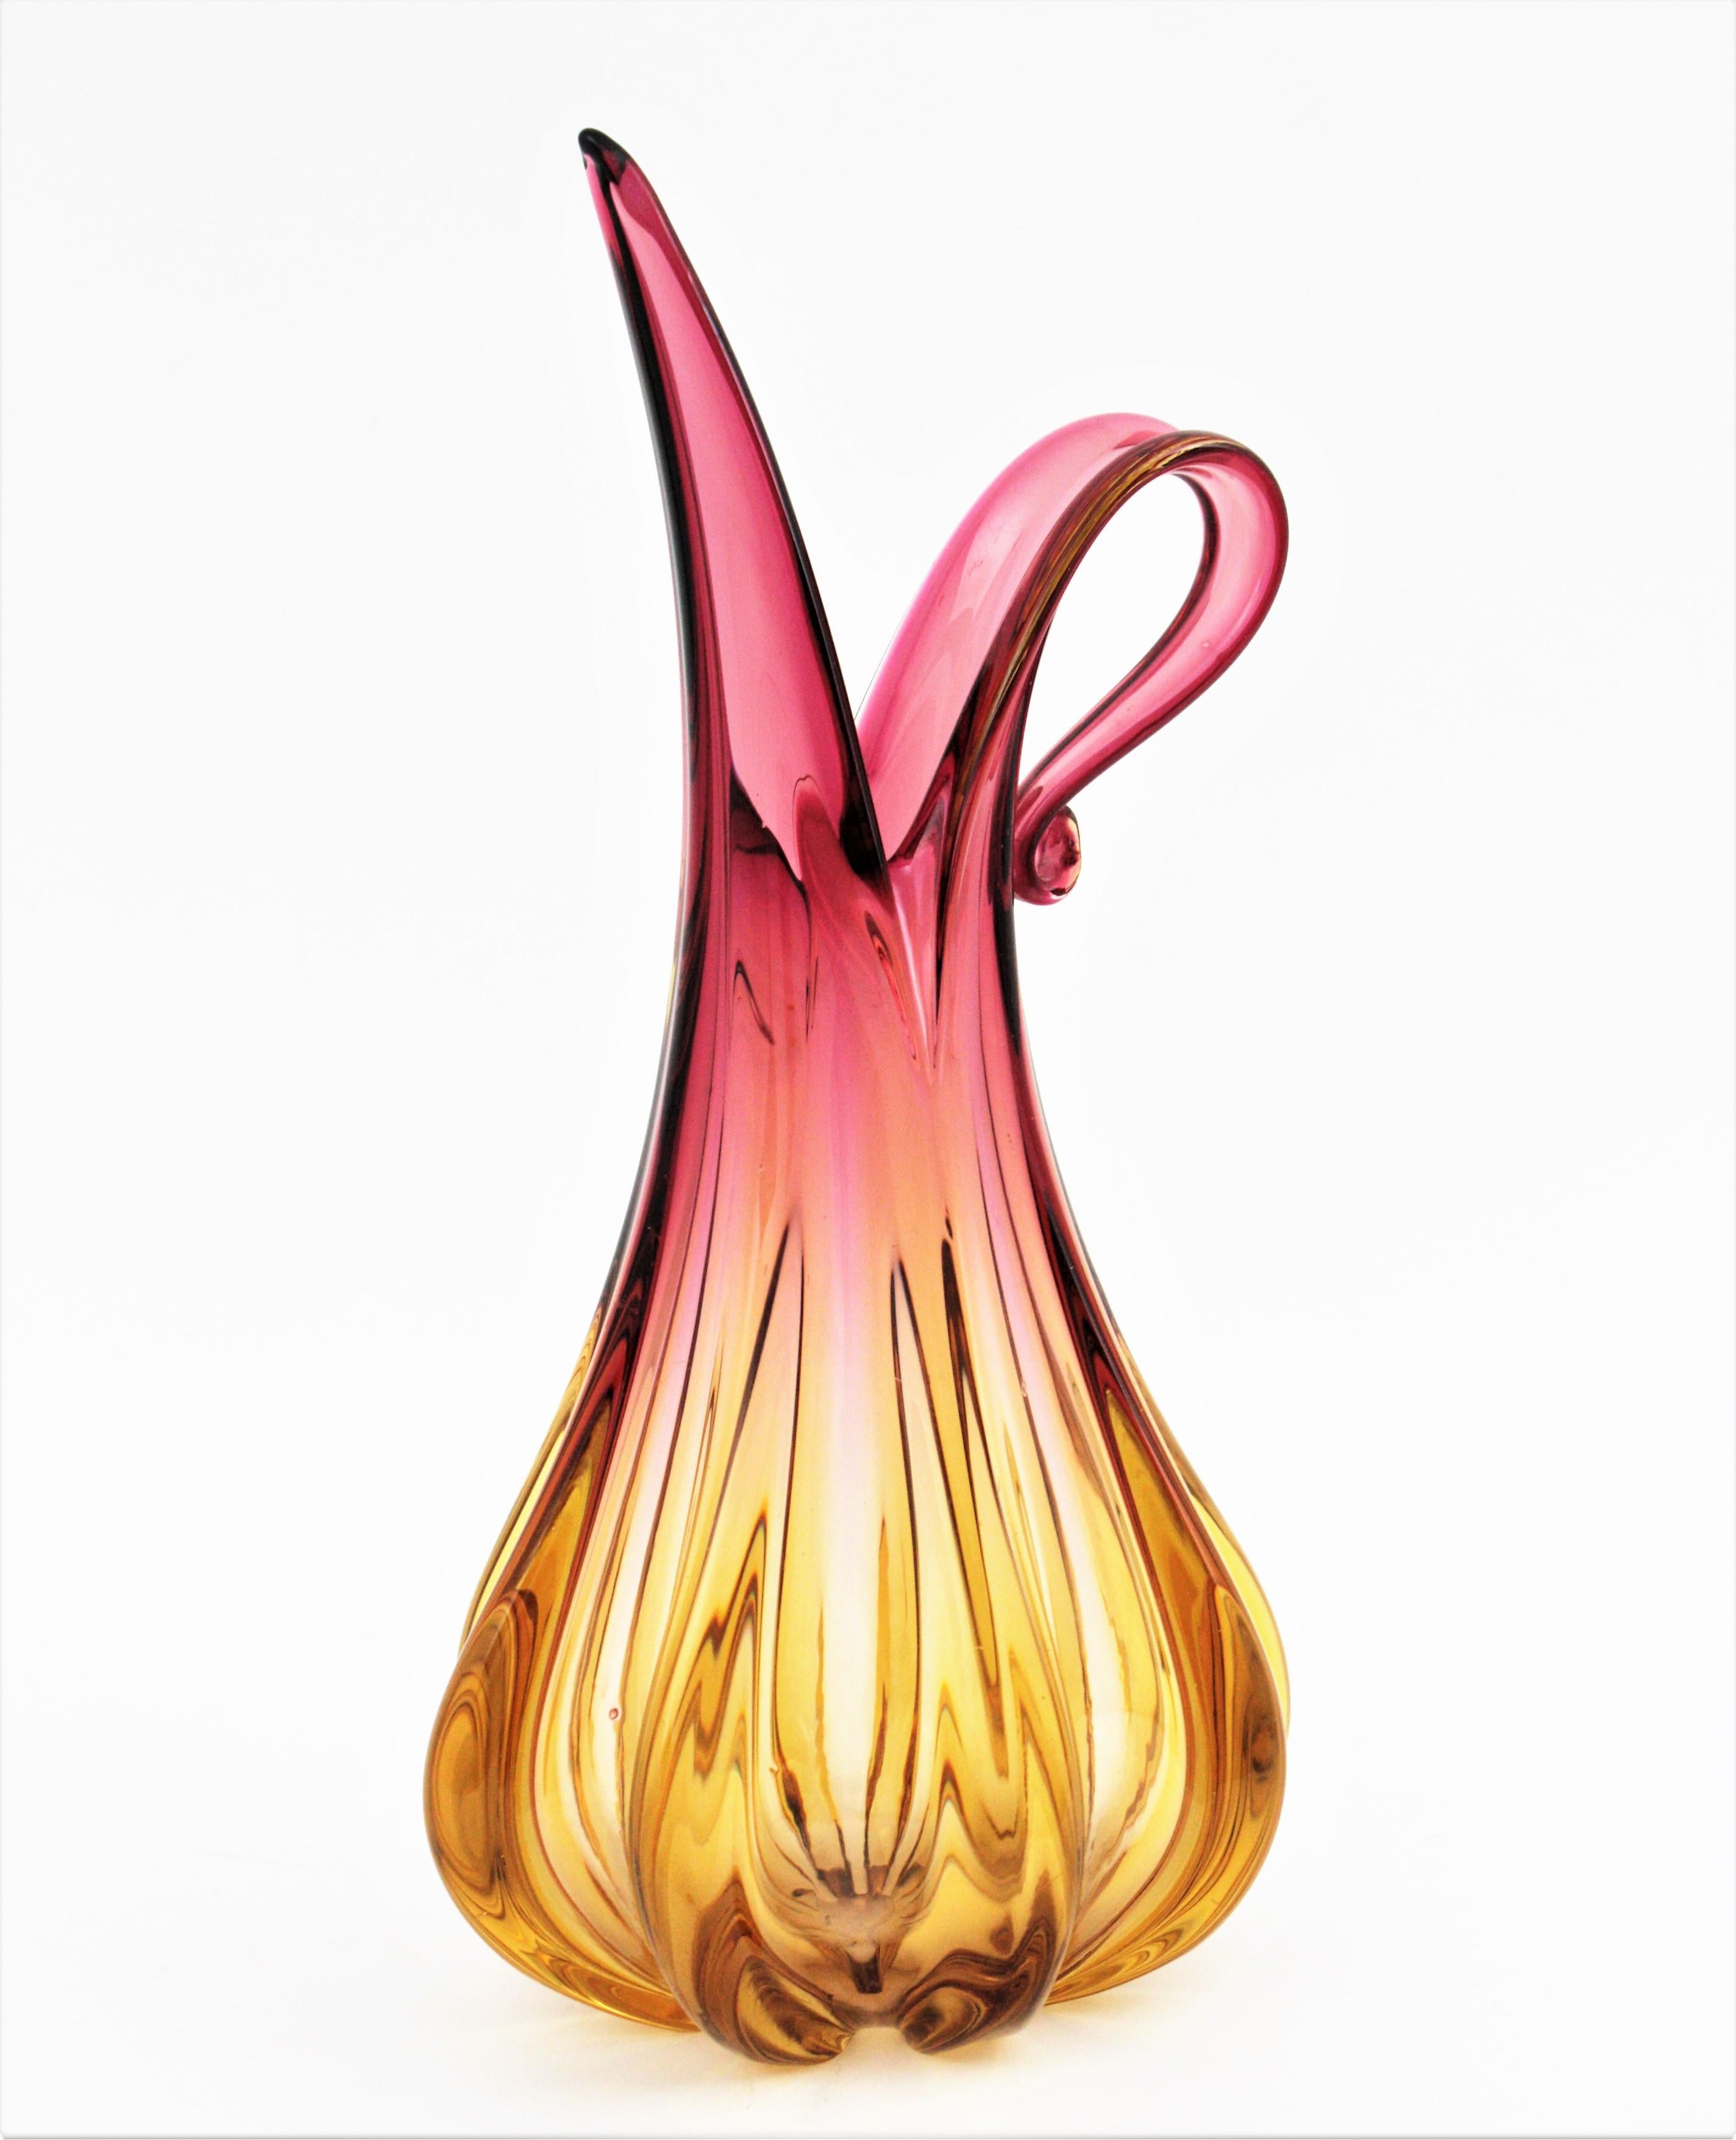 Vase sculptural en forme de cruche de Murano en verre rose et ambre. Conçue par Flavio Poli et fabriquée par Seguso Vetri d'Arte. Italie, années 1950.
Grande taille.
Des couleurs vibrantes dans un dégradé de tons allant du rose au jaune ambré en